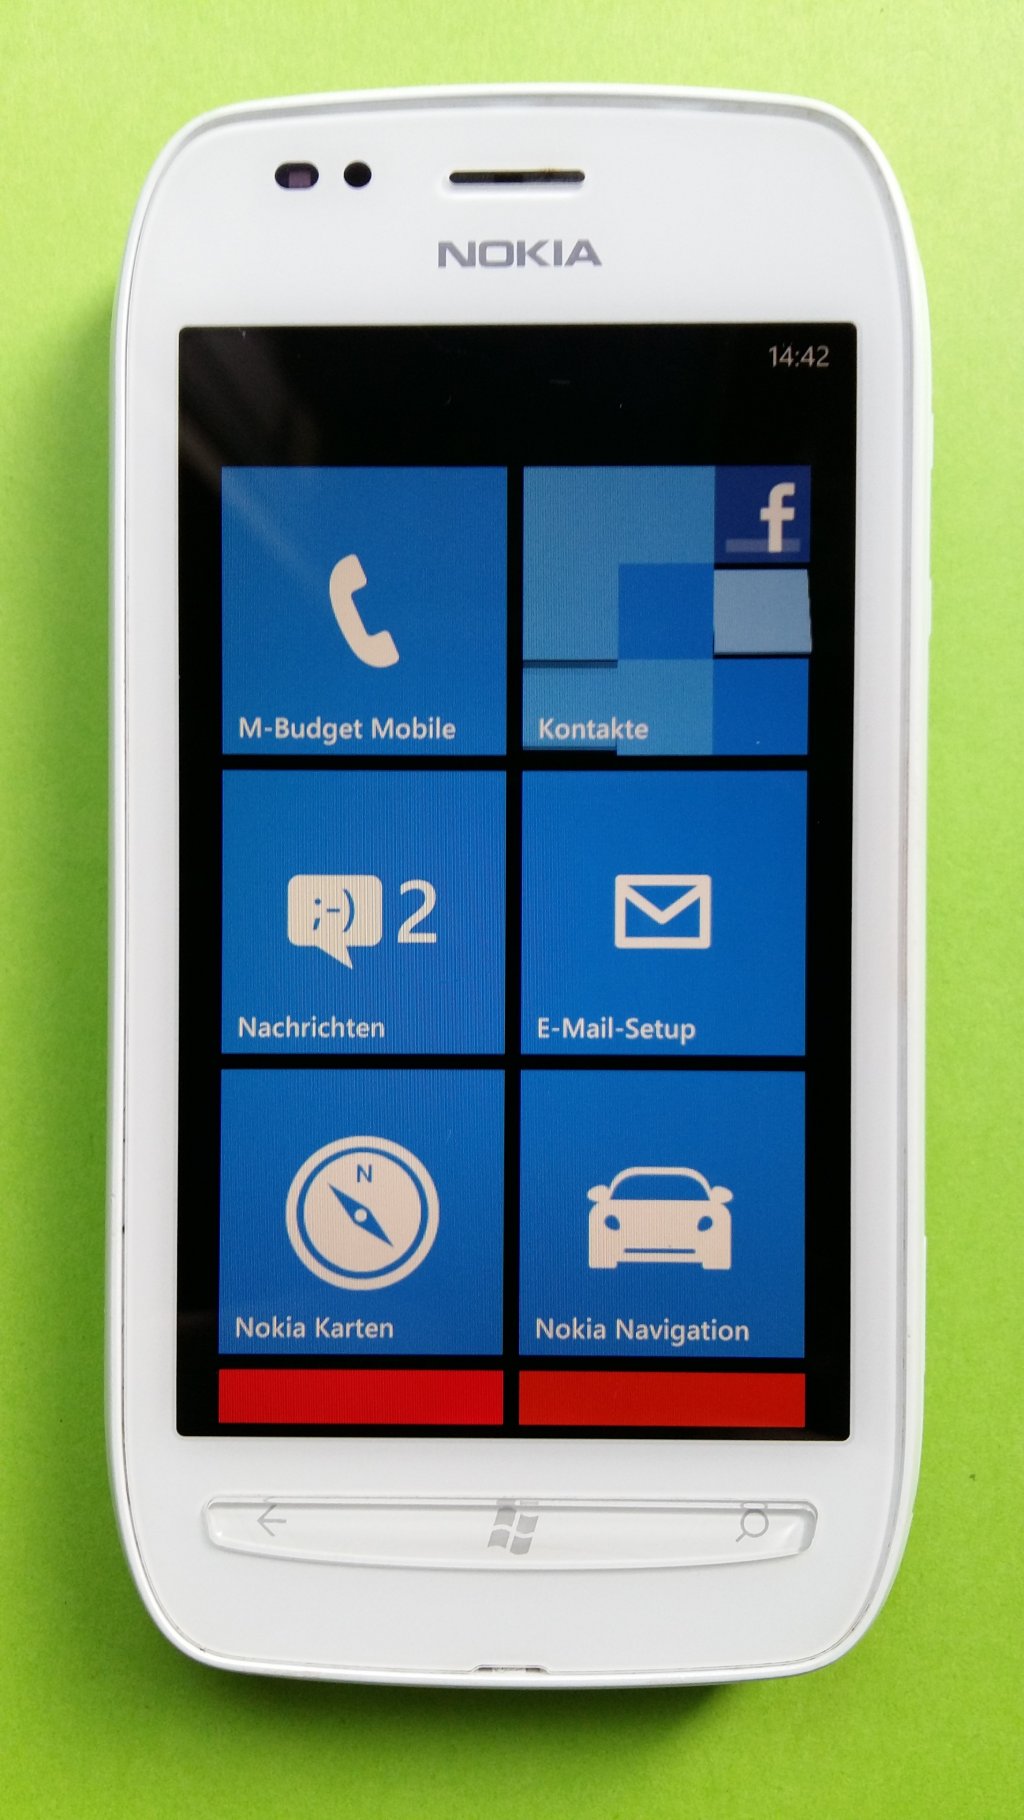 image-7544064-Nokia_710_Lumia_(2)1.w640.jpg